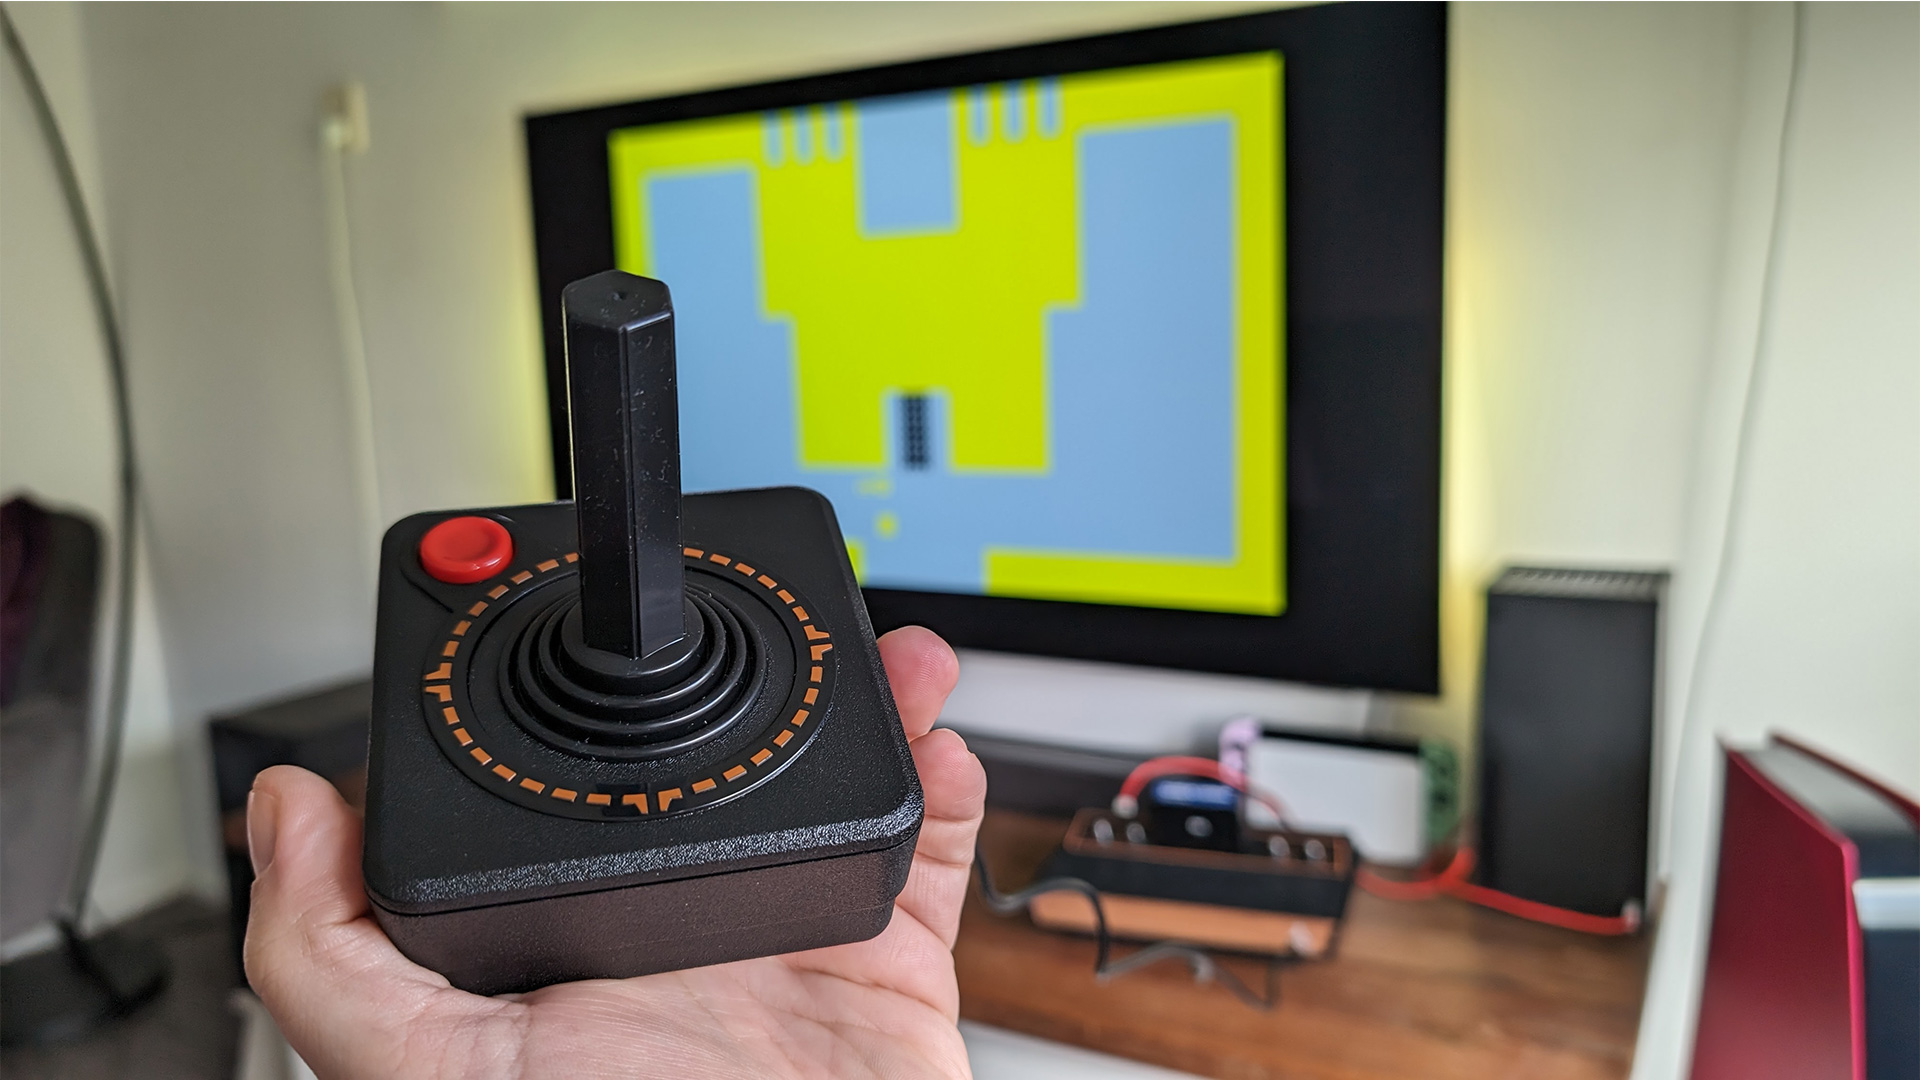 Atari 2600 Plus review